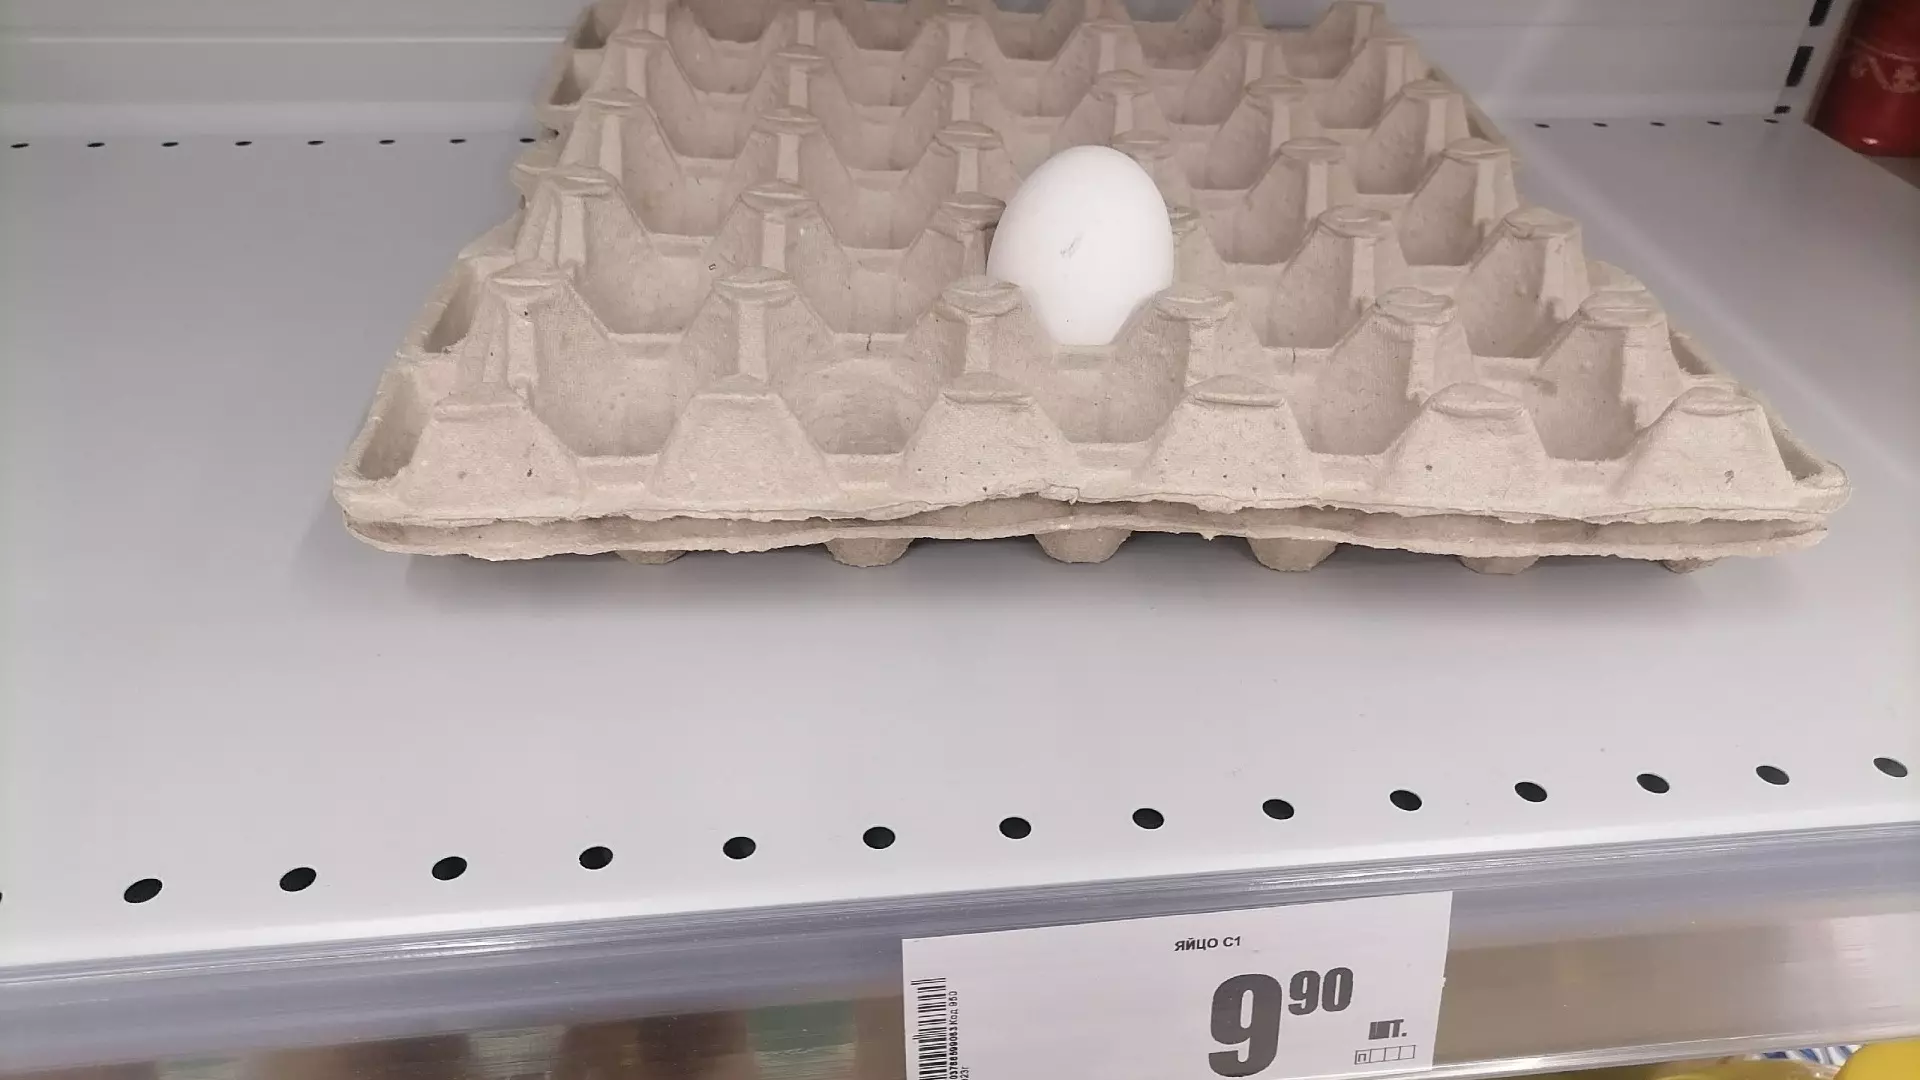 В читинских магазинах появились дешевые яйца